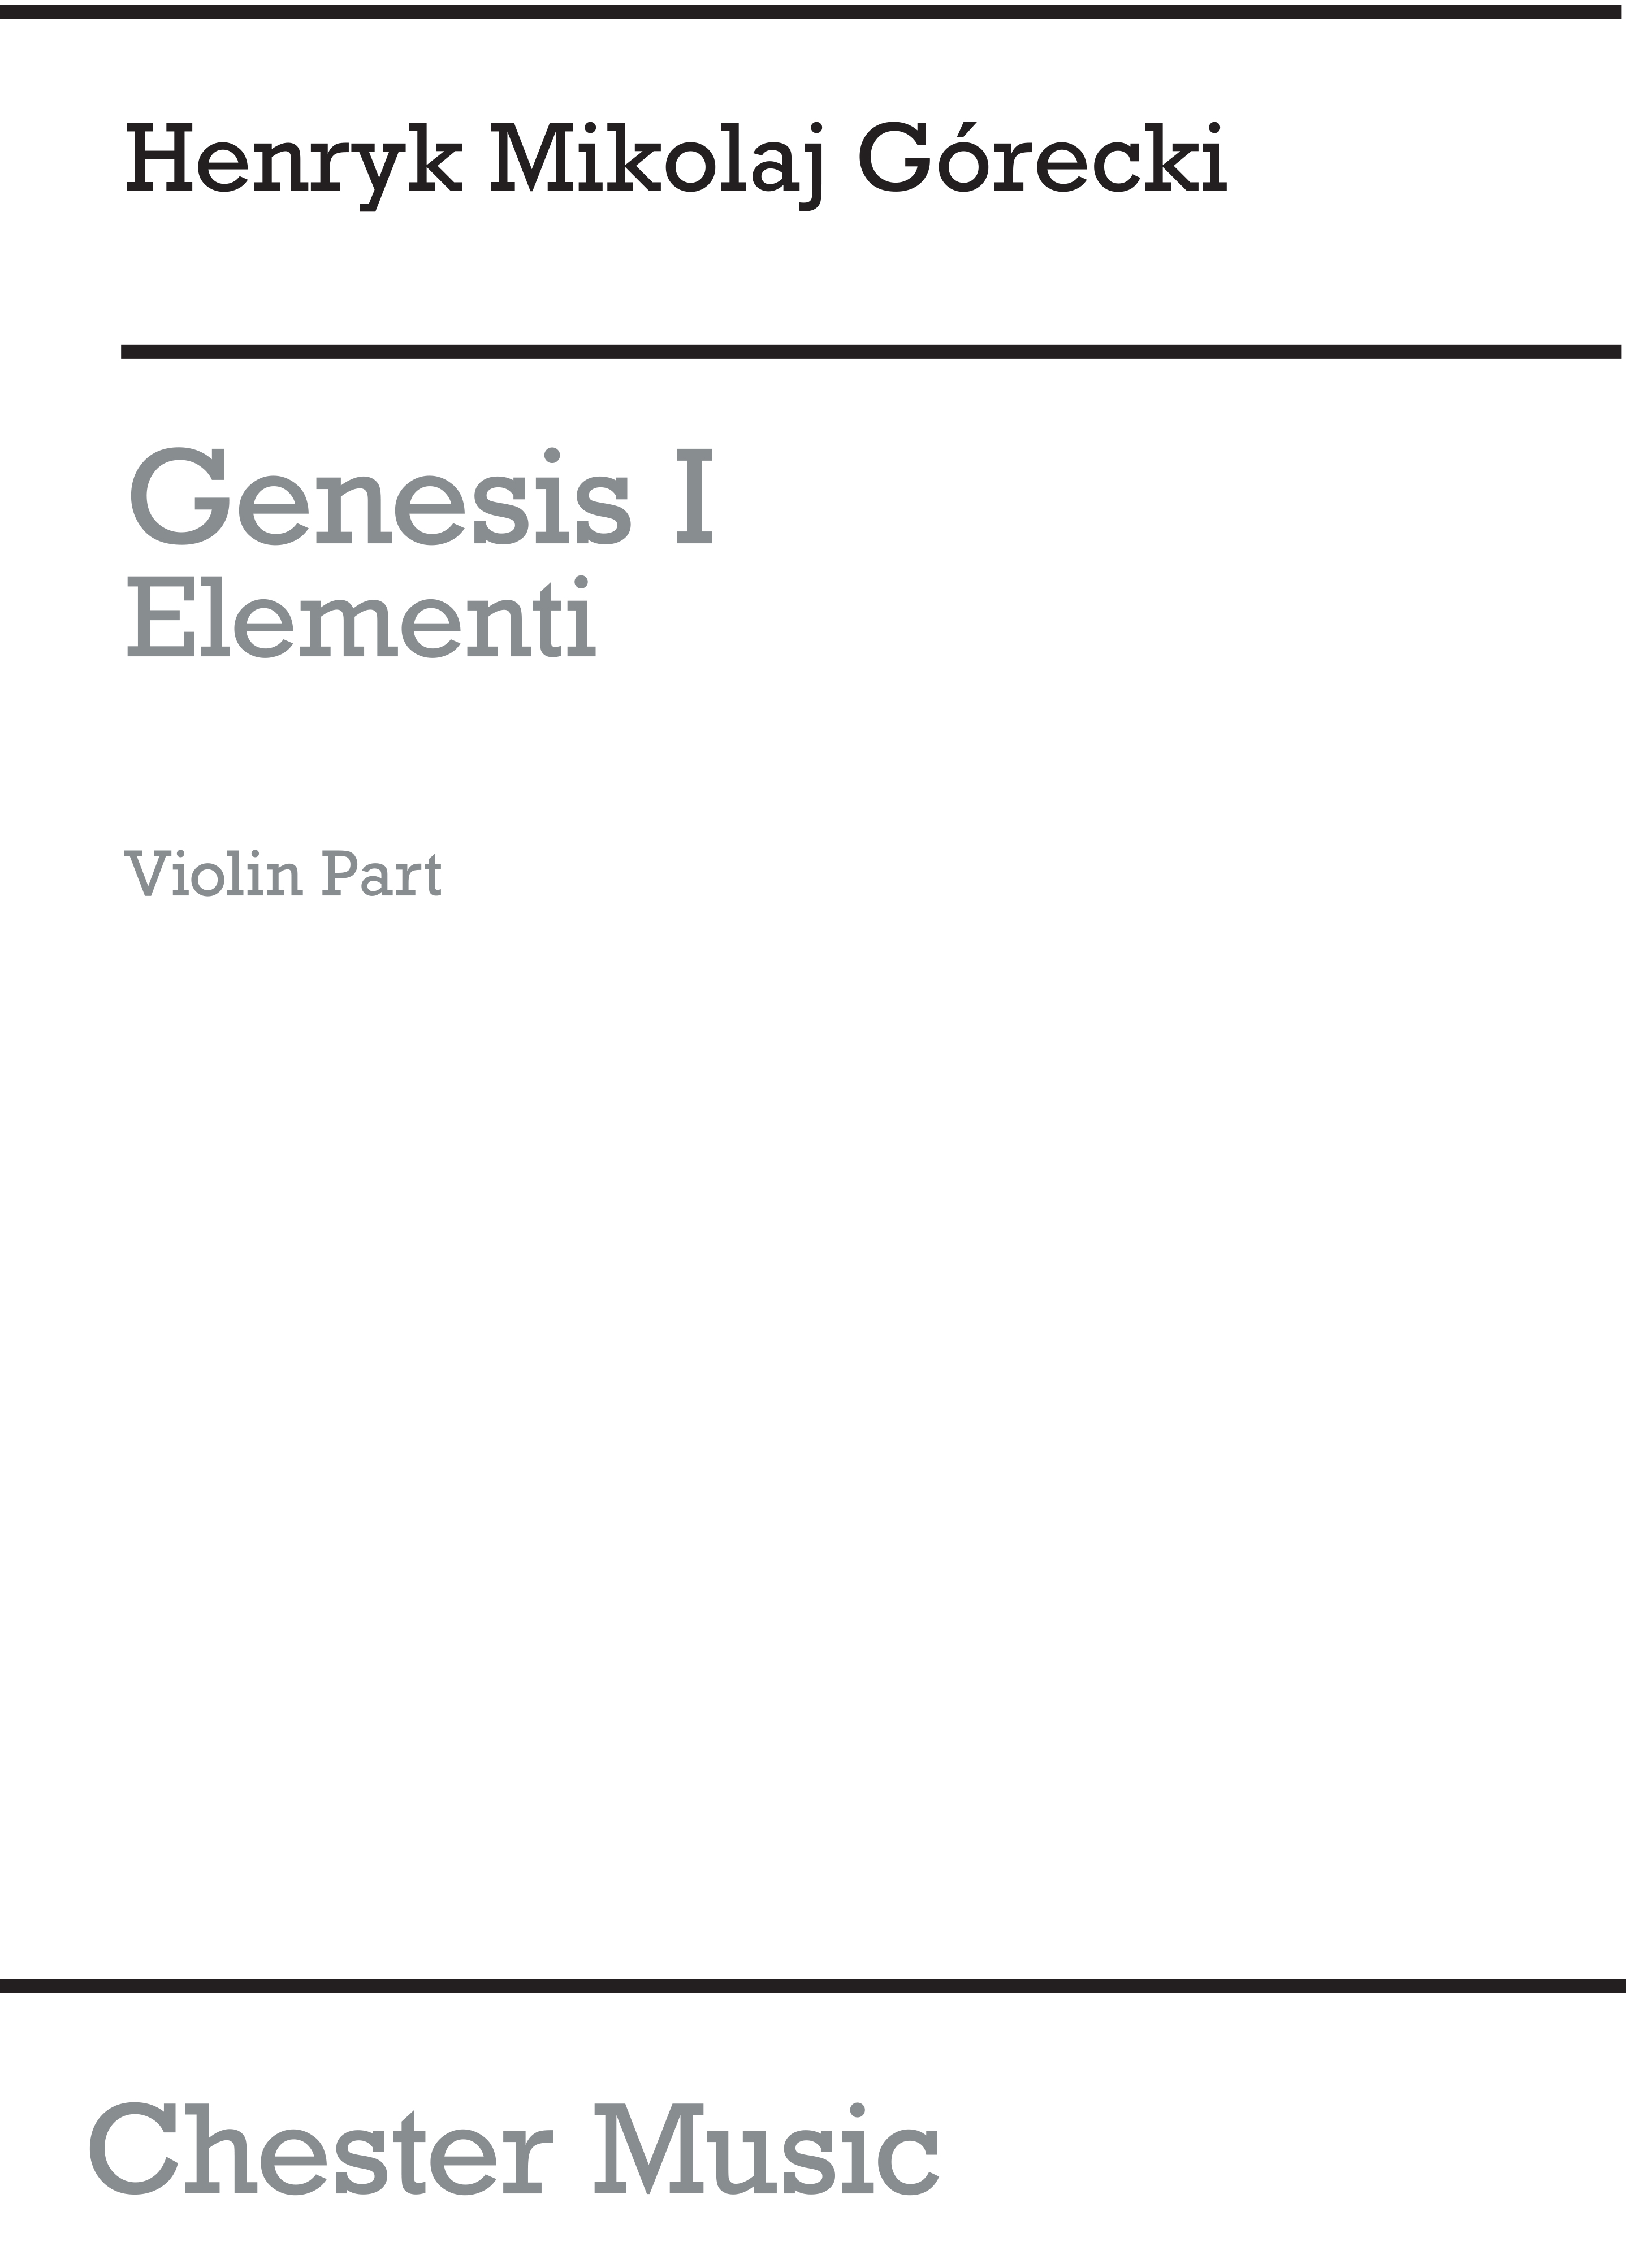 Henryk Mikolaj Grecki: Genesis 1 - Elementi (Set Of Parts): String Trio: Parts